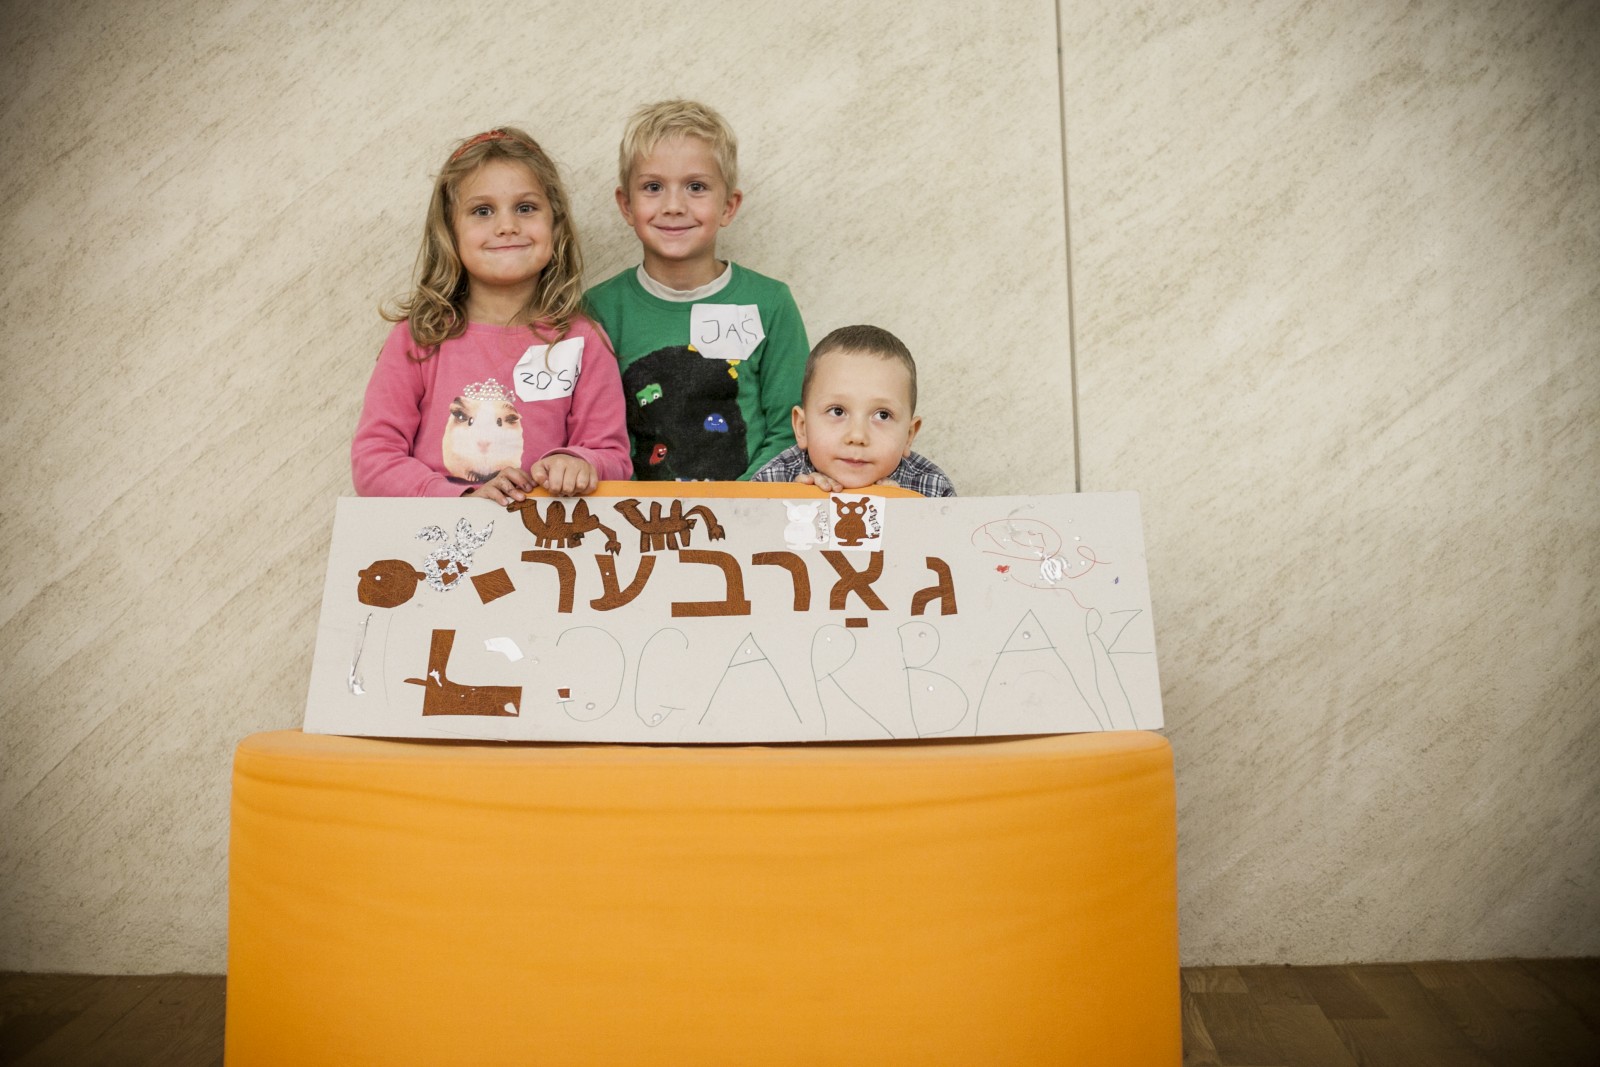 Troje dzieci stoi za pomarańczowym pufem, na którym stoi kartonowa tabliczka z literami hebrajskimi i polskimi. Wszyscy uśmiechają się radośnie, chłopiec z prawej strony jest schylony